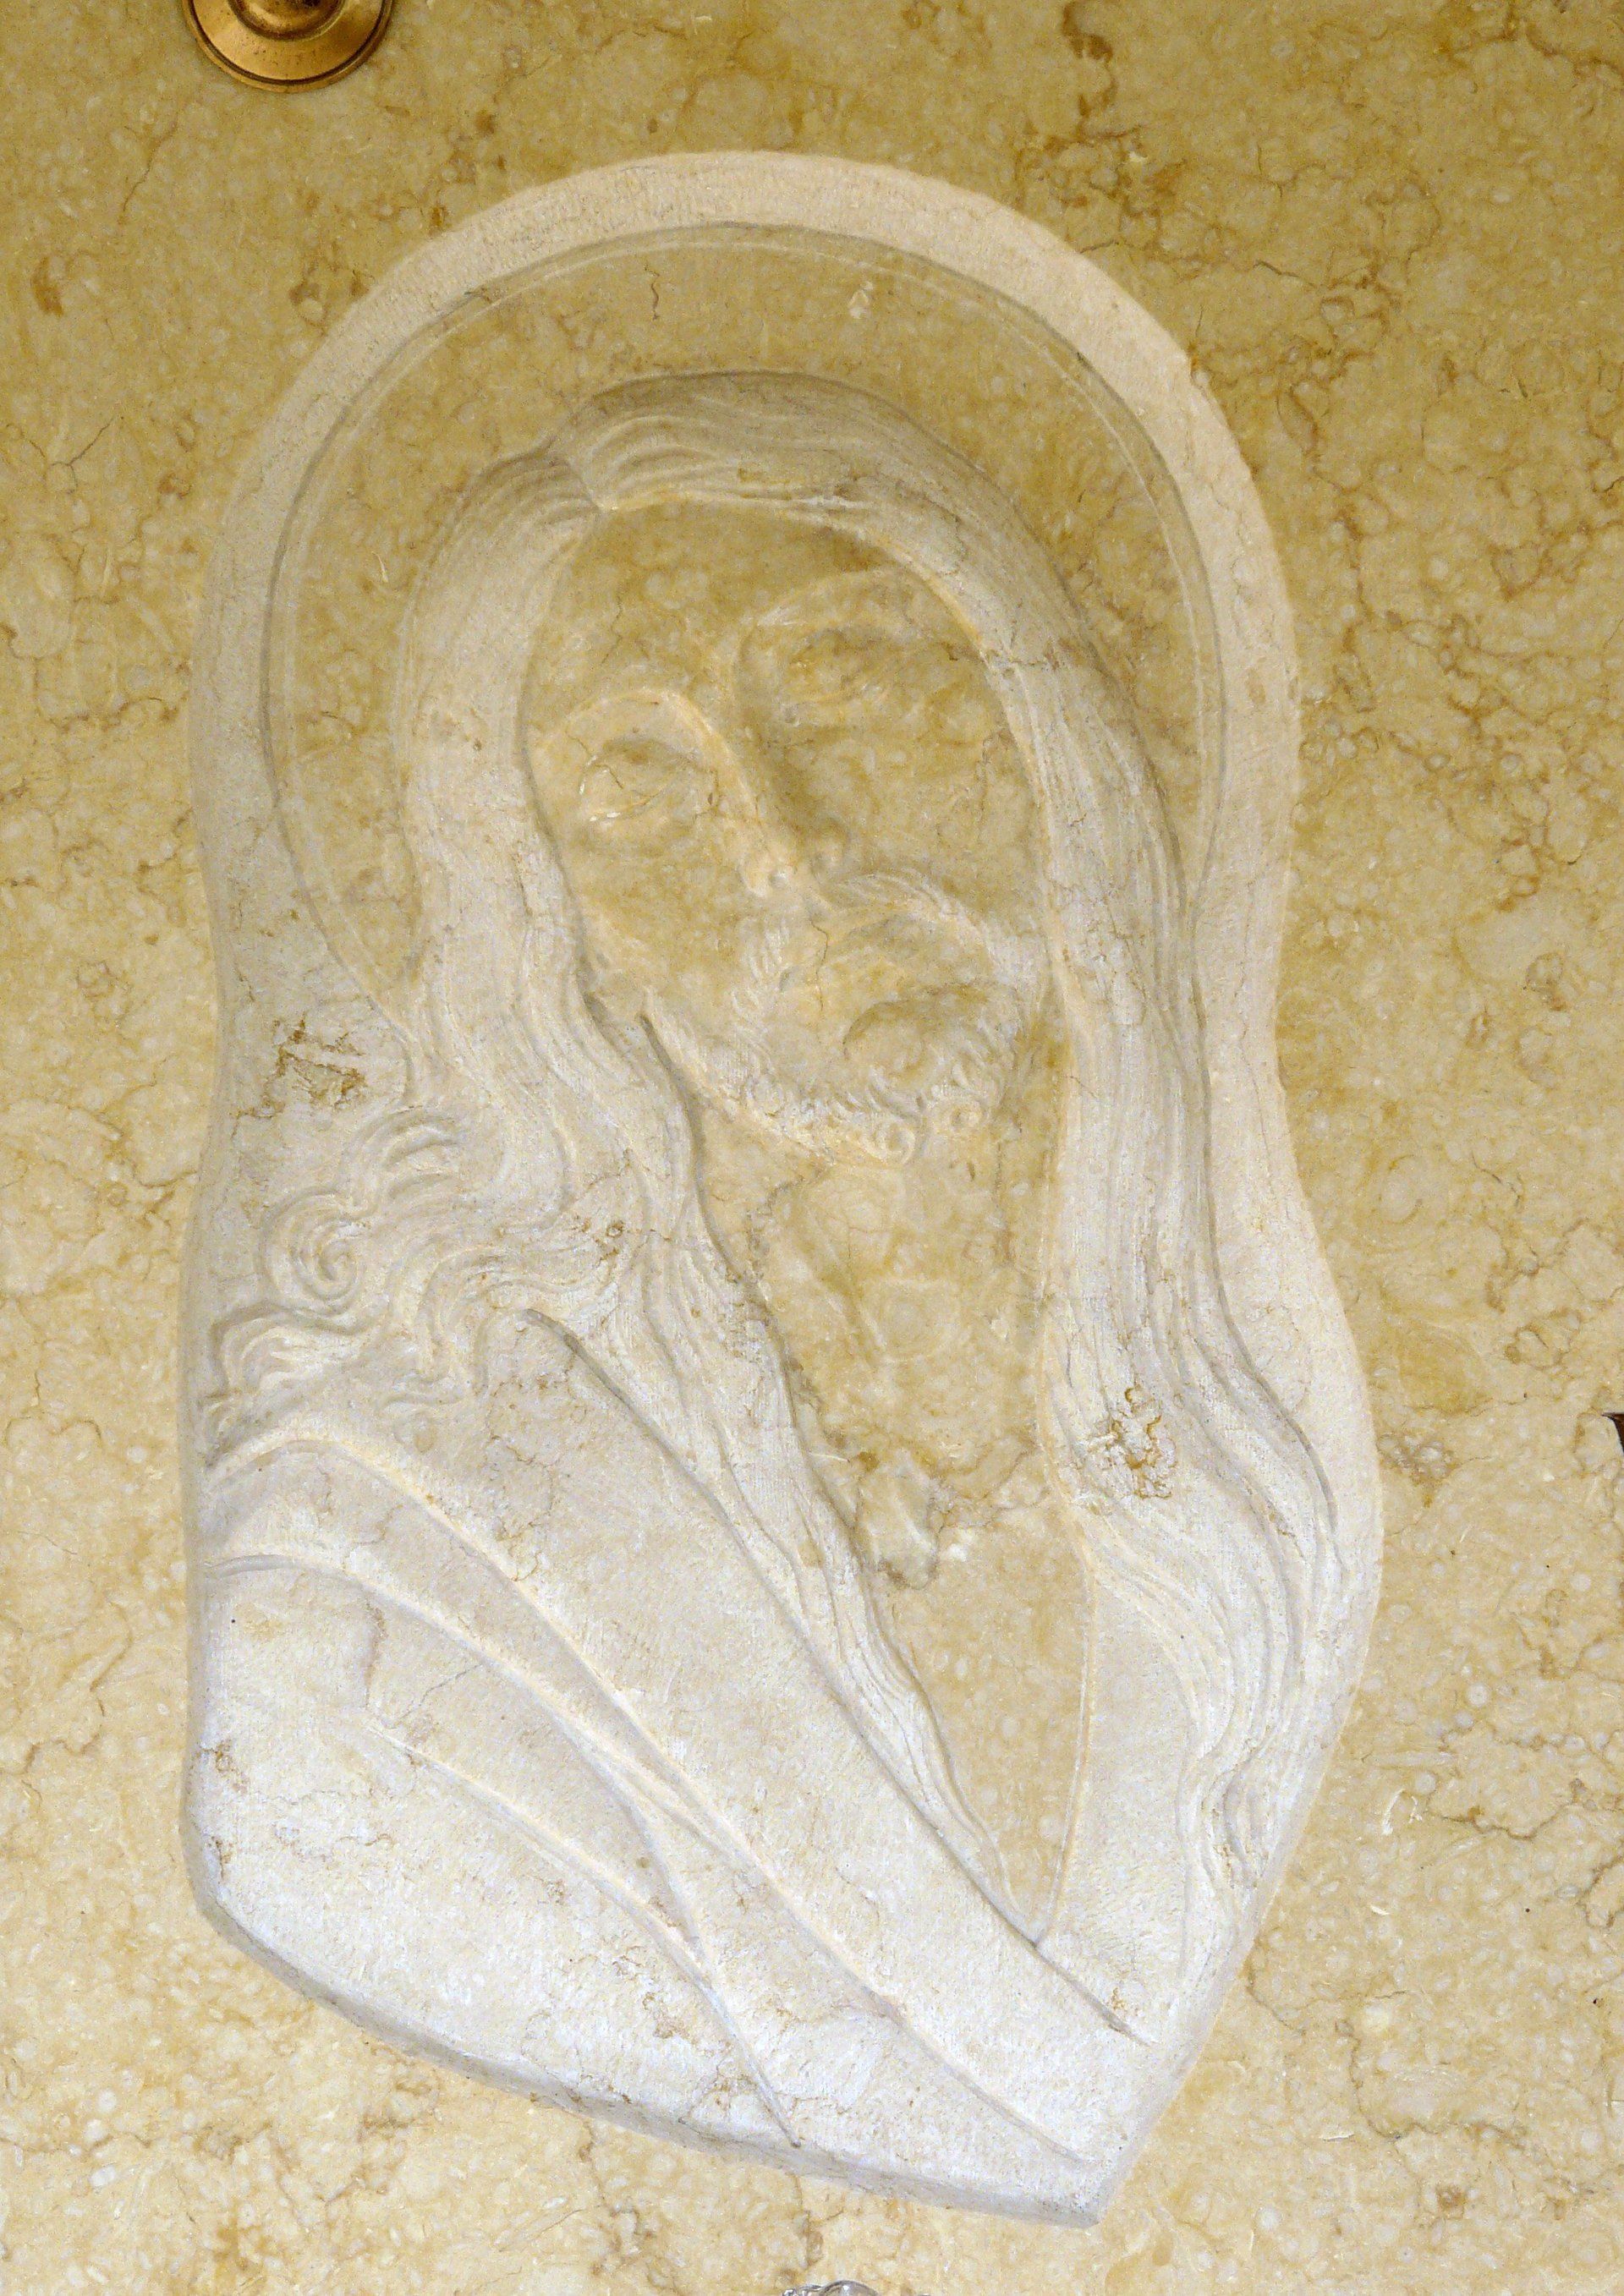 basso rilievo su marmo giallo rappresentante una madonna